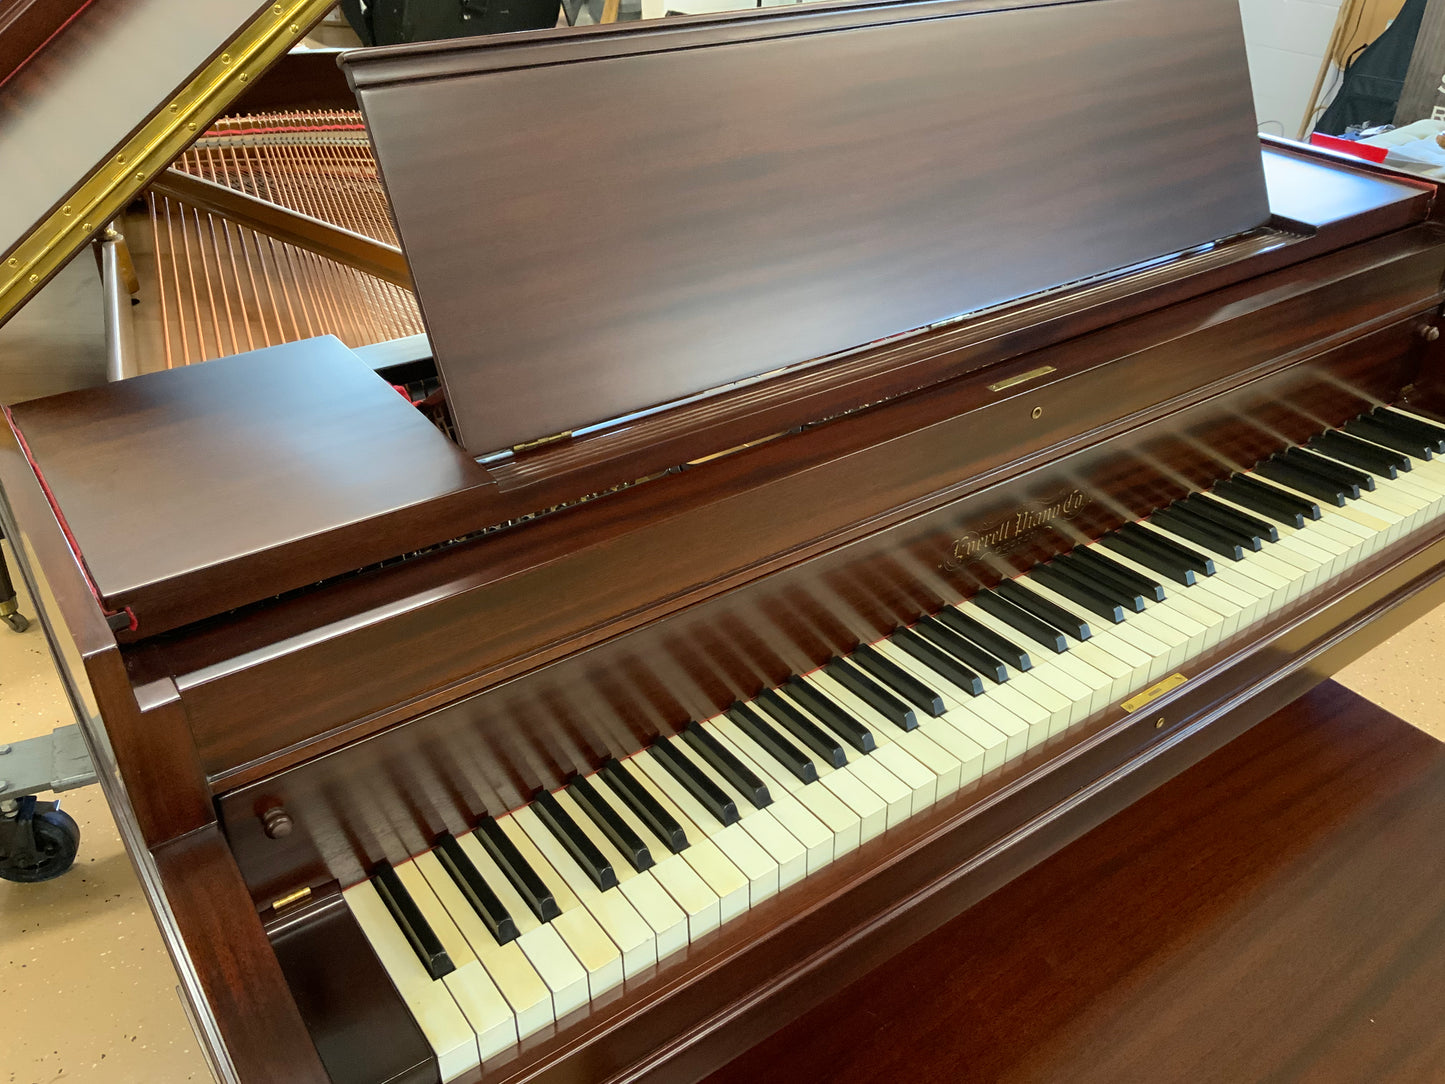 1917 Everett Piano Co. Fully Restored 5’ 3” Grand Piano